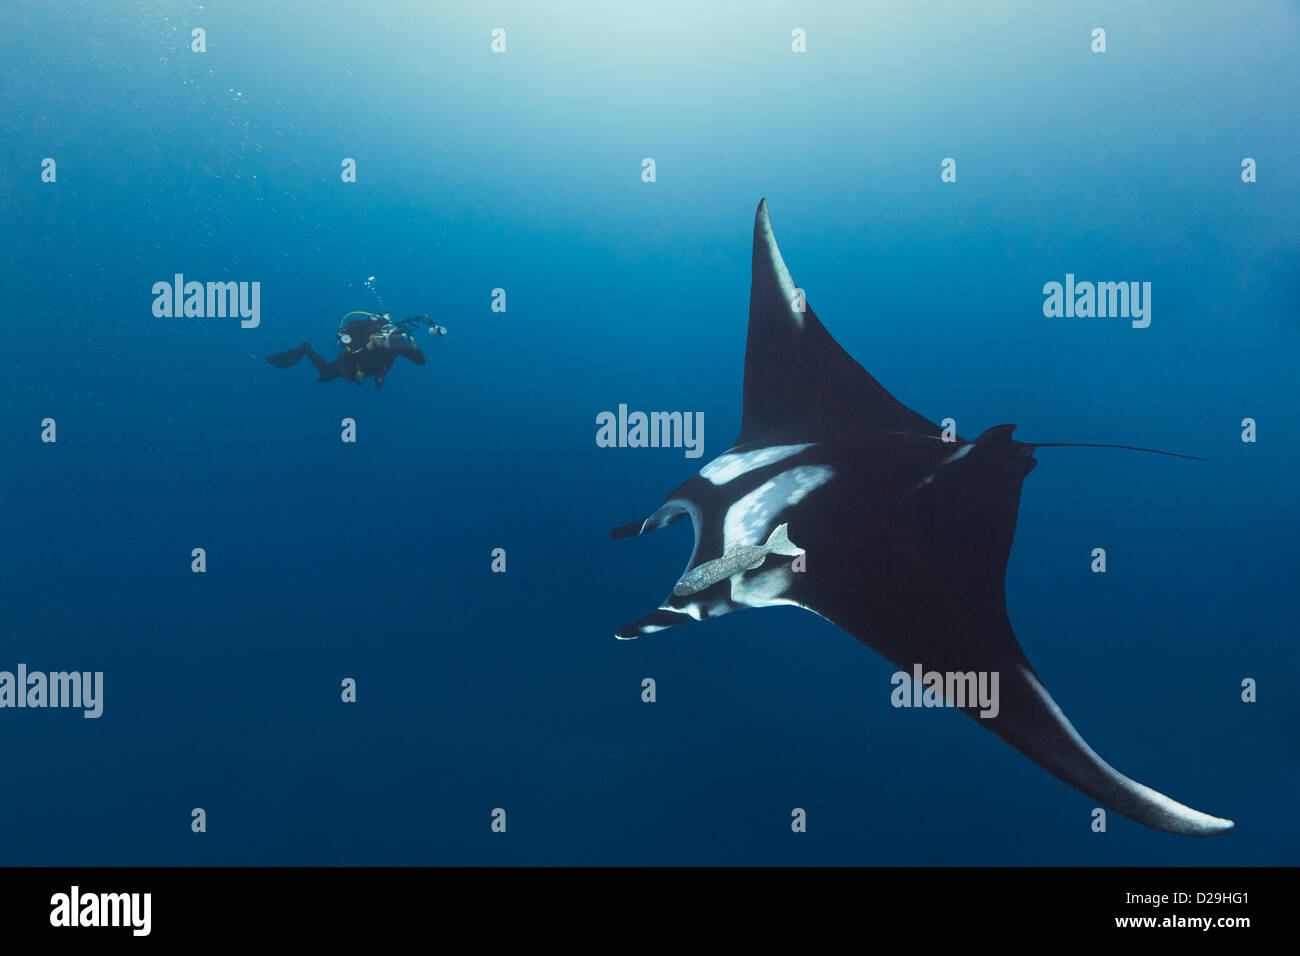 Giant oceanic manta ray fotografato in acqua al di fuori del Archipielago de Revillagigedo, Messico Punta Tosca divesite Foto Stock